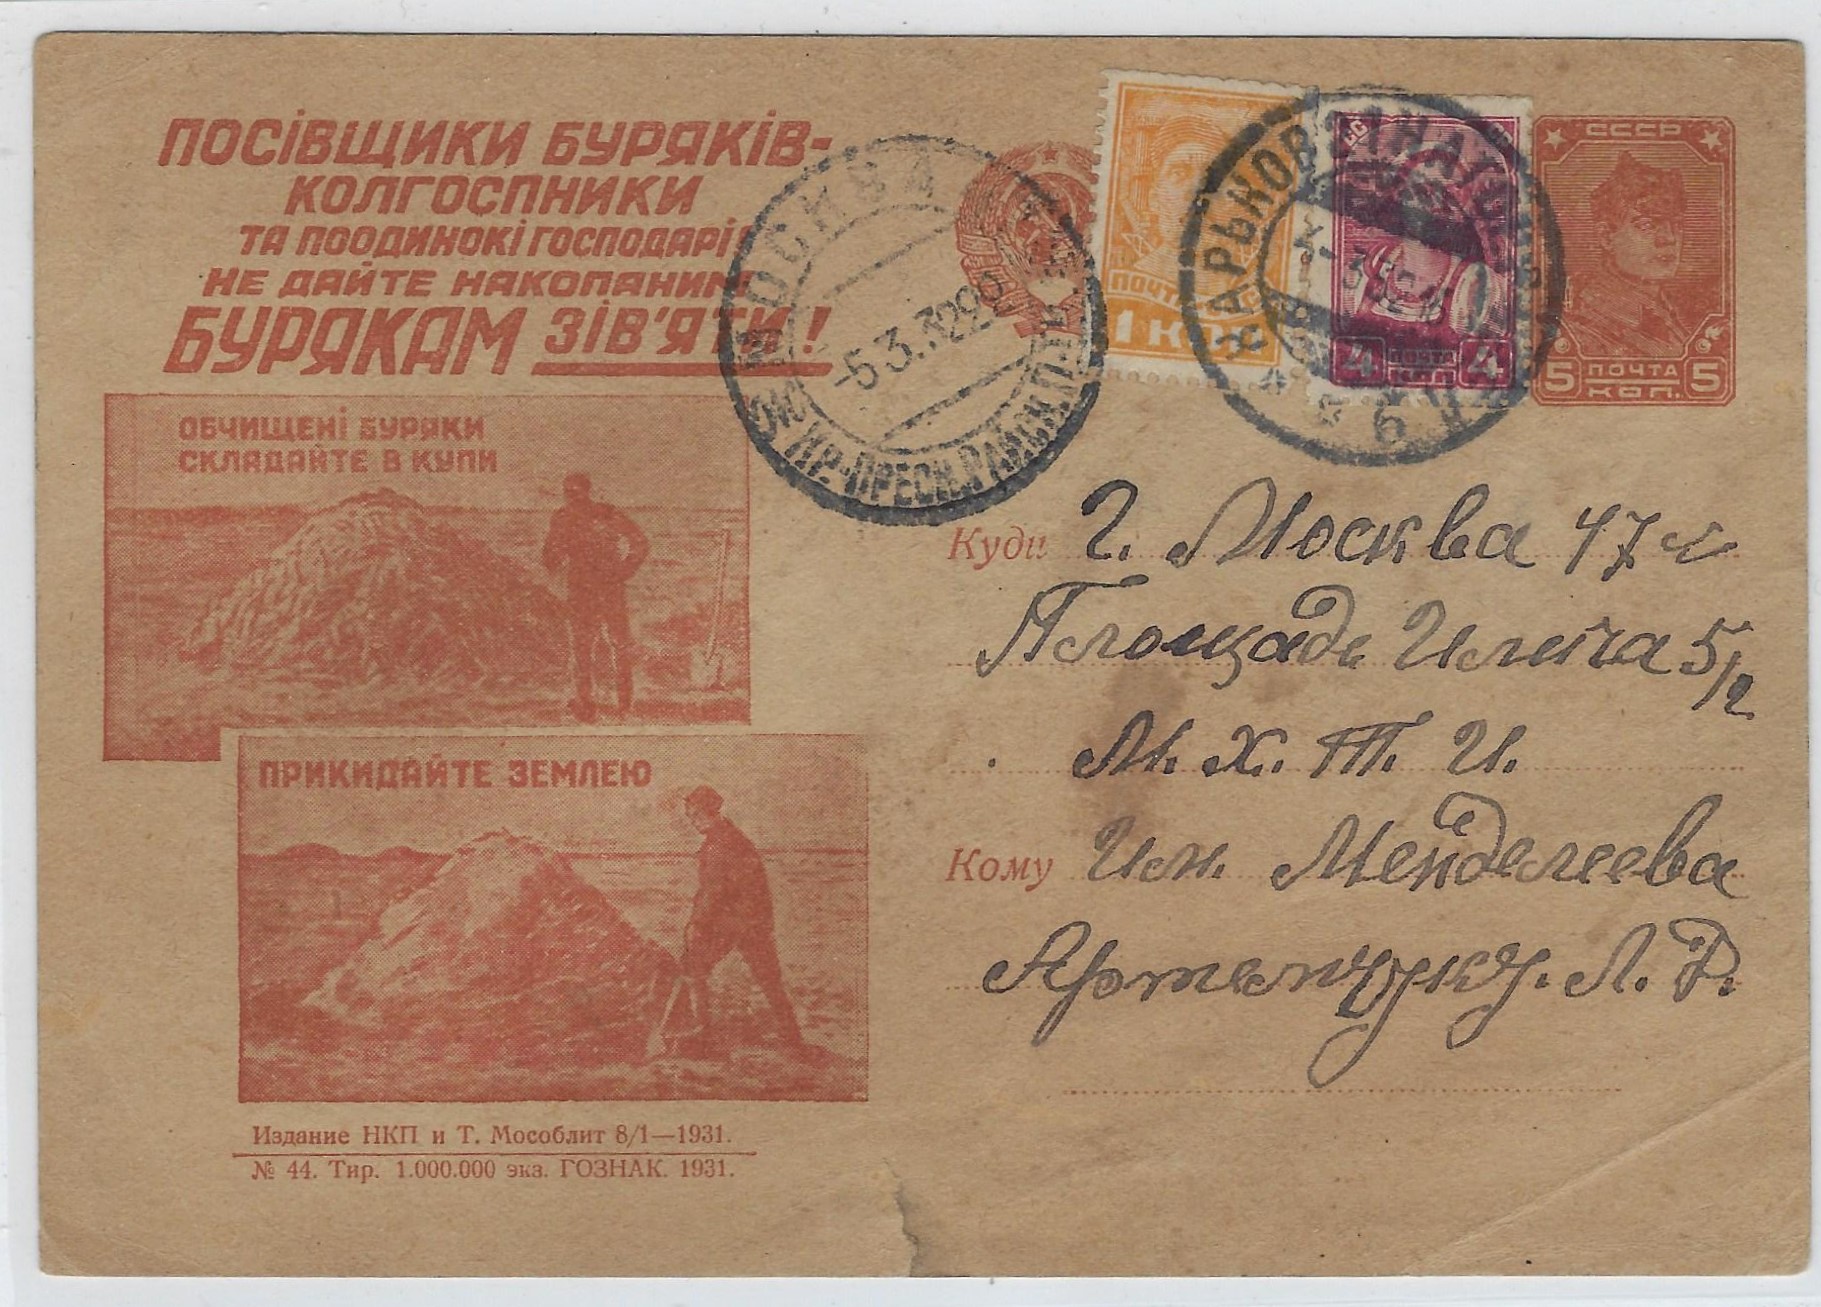 Postal Stationery - Soviet Union Scott 3445 Michel P104.44 